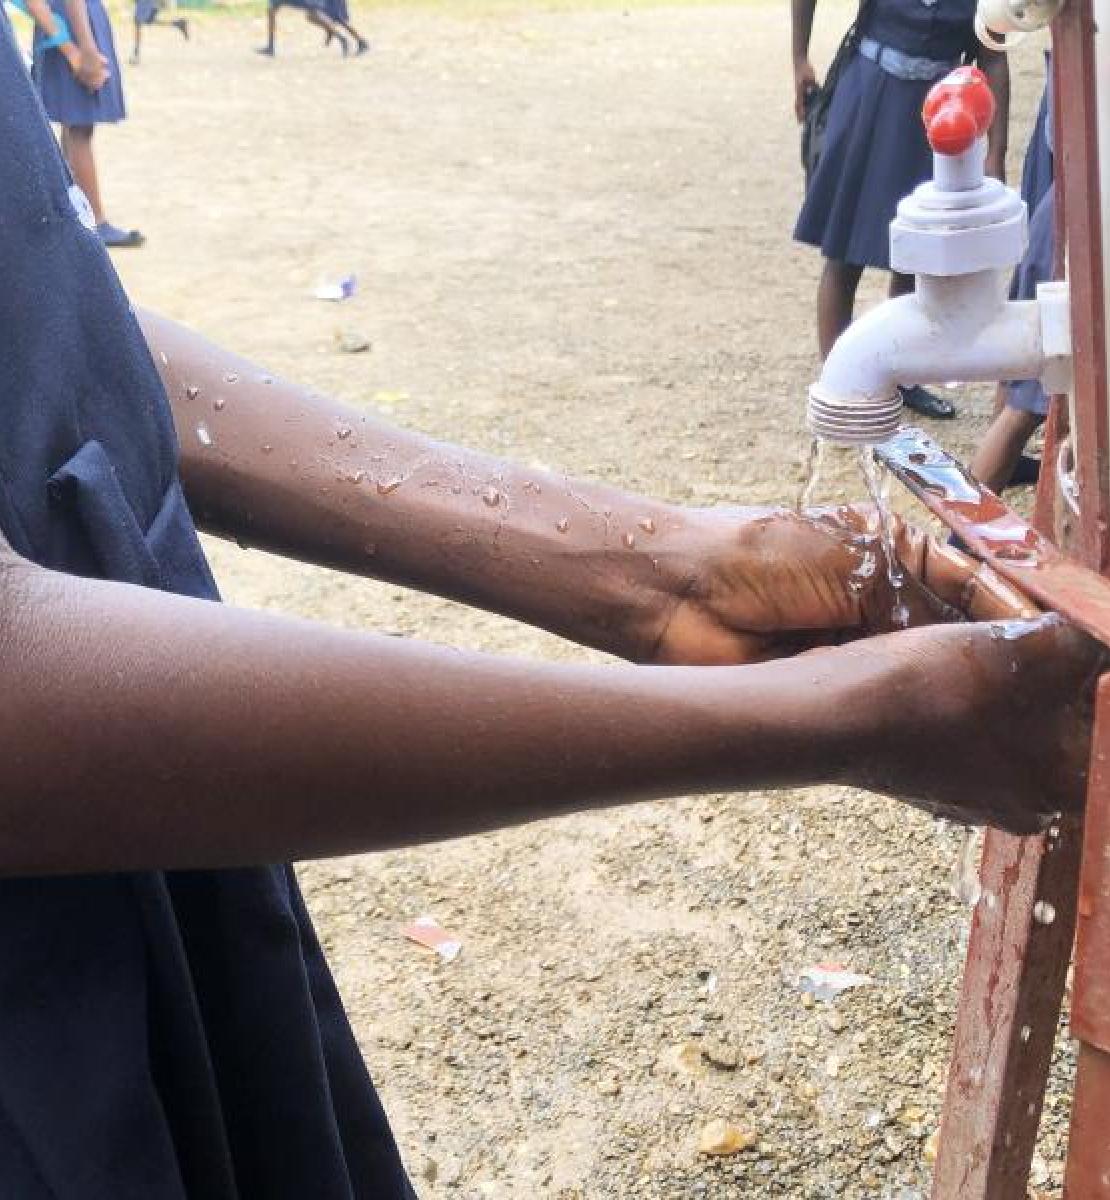 فتاة ترتدي الزي المدرسي الأزرق تغسل يديها بالصابون في الخارج.